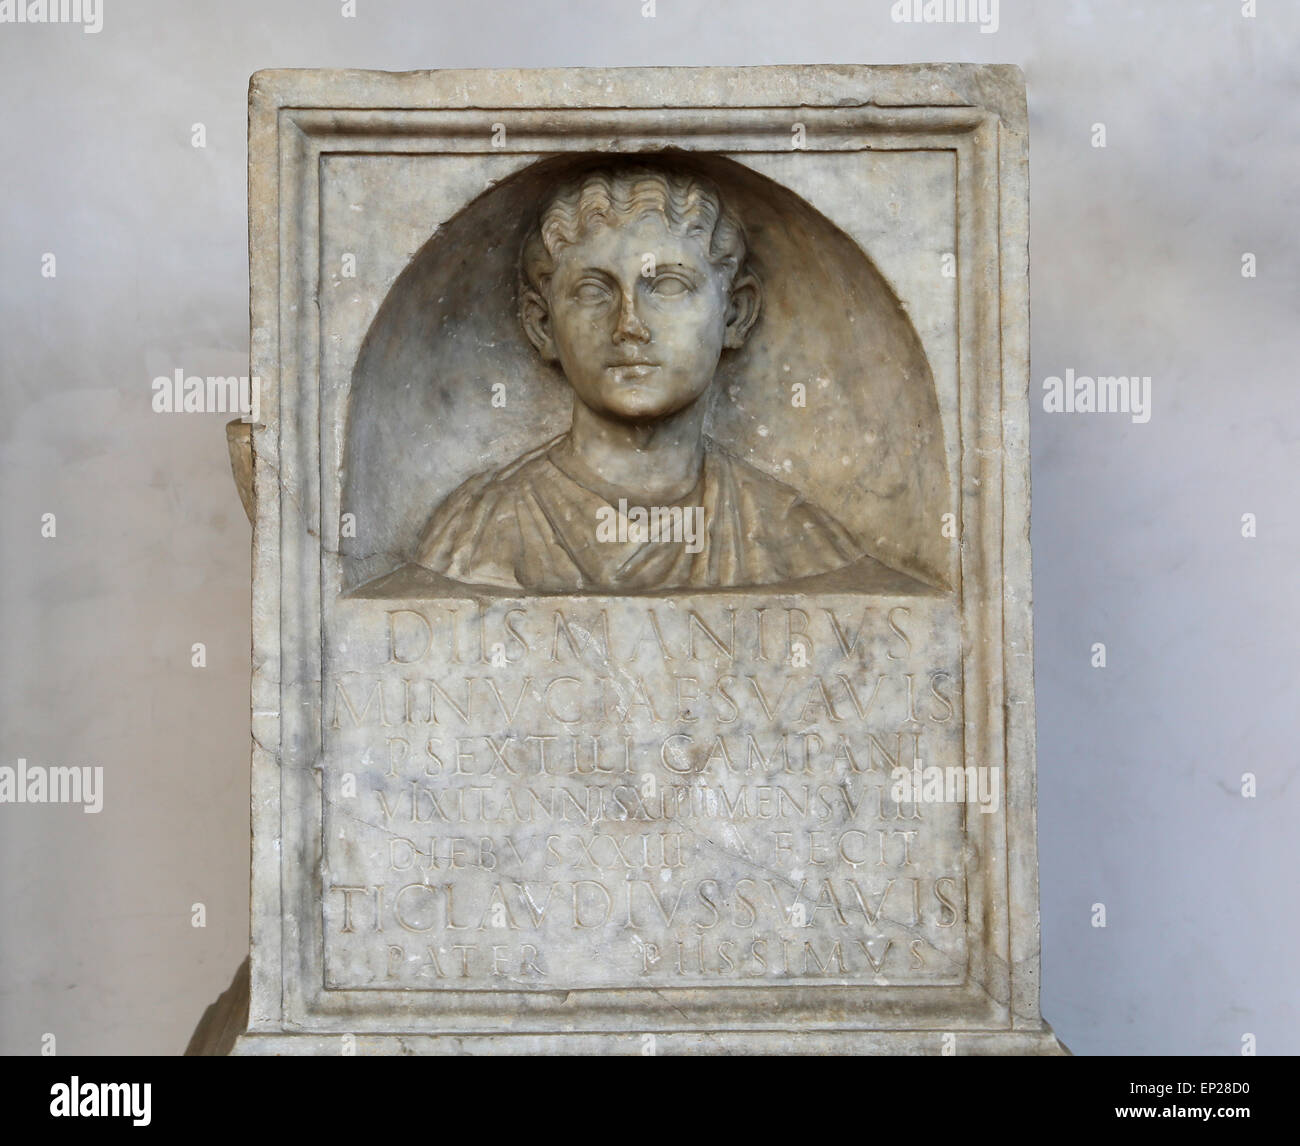 Grabbeigaben Altar seine Tochter Minucia Suavis, Ehefrau von Publiusa Sextilius Campanus von Tiberius Claudius Suavis gewidmet. Rom. Stockfoto